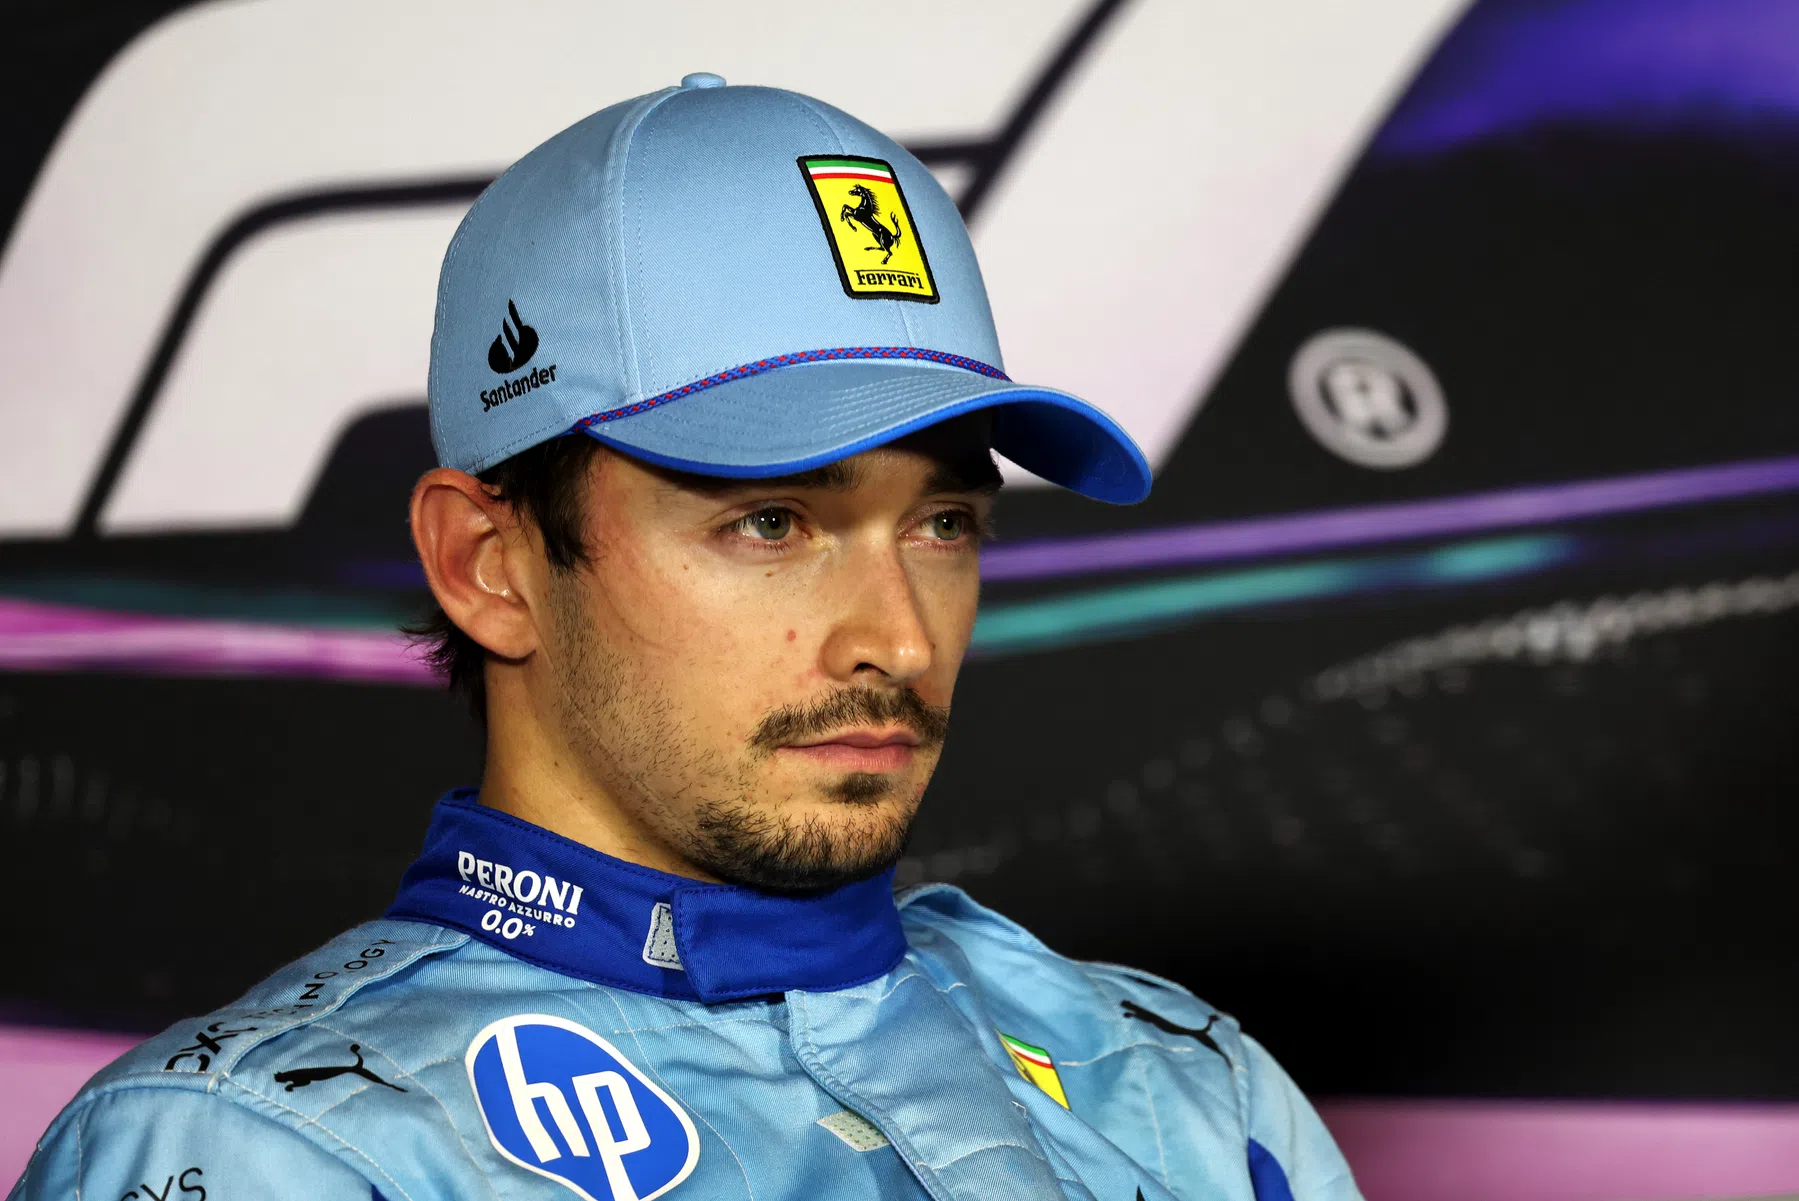 Leclerc will Verstappen in der ersten Kurve des Grand Prix von Miami angreifen